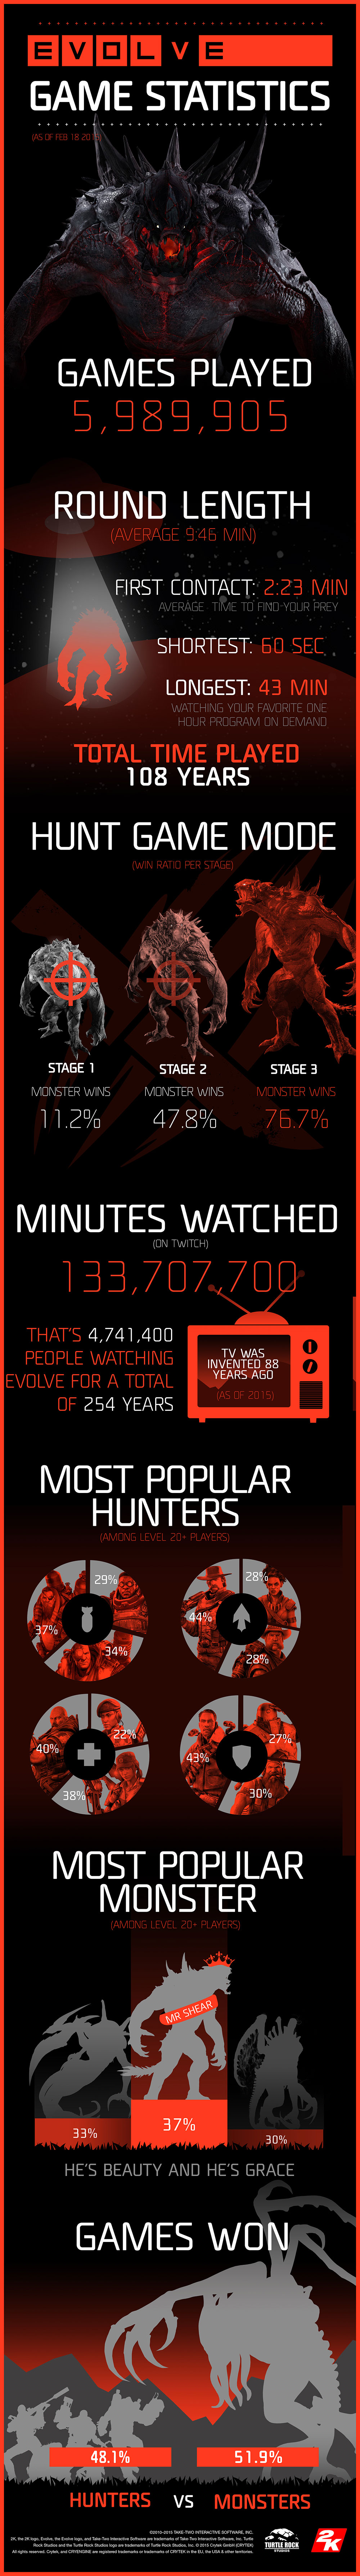 evolve infografica sui dati della prima settimana dall uscita del gioco 2K